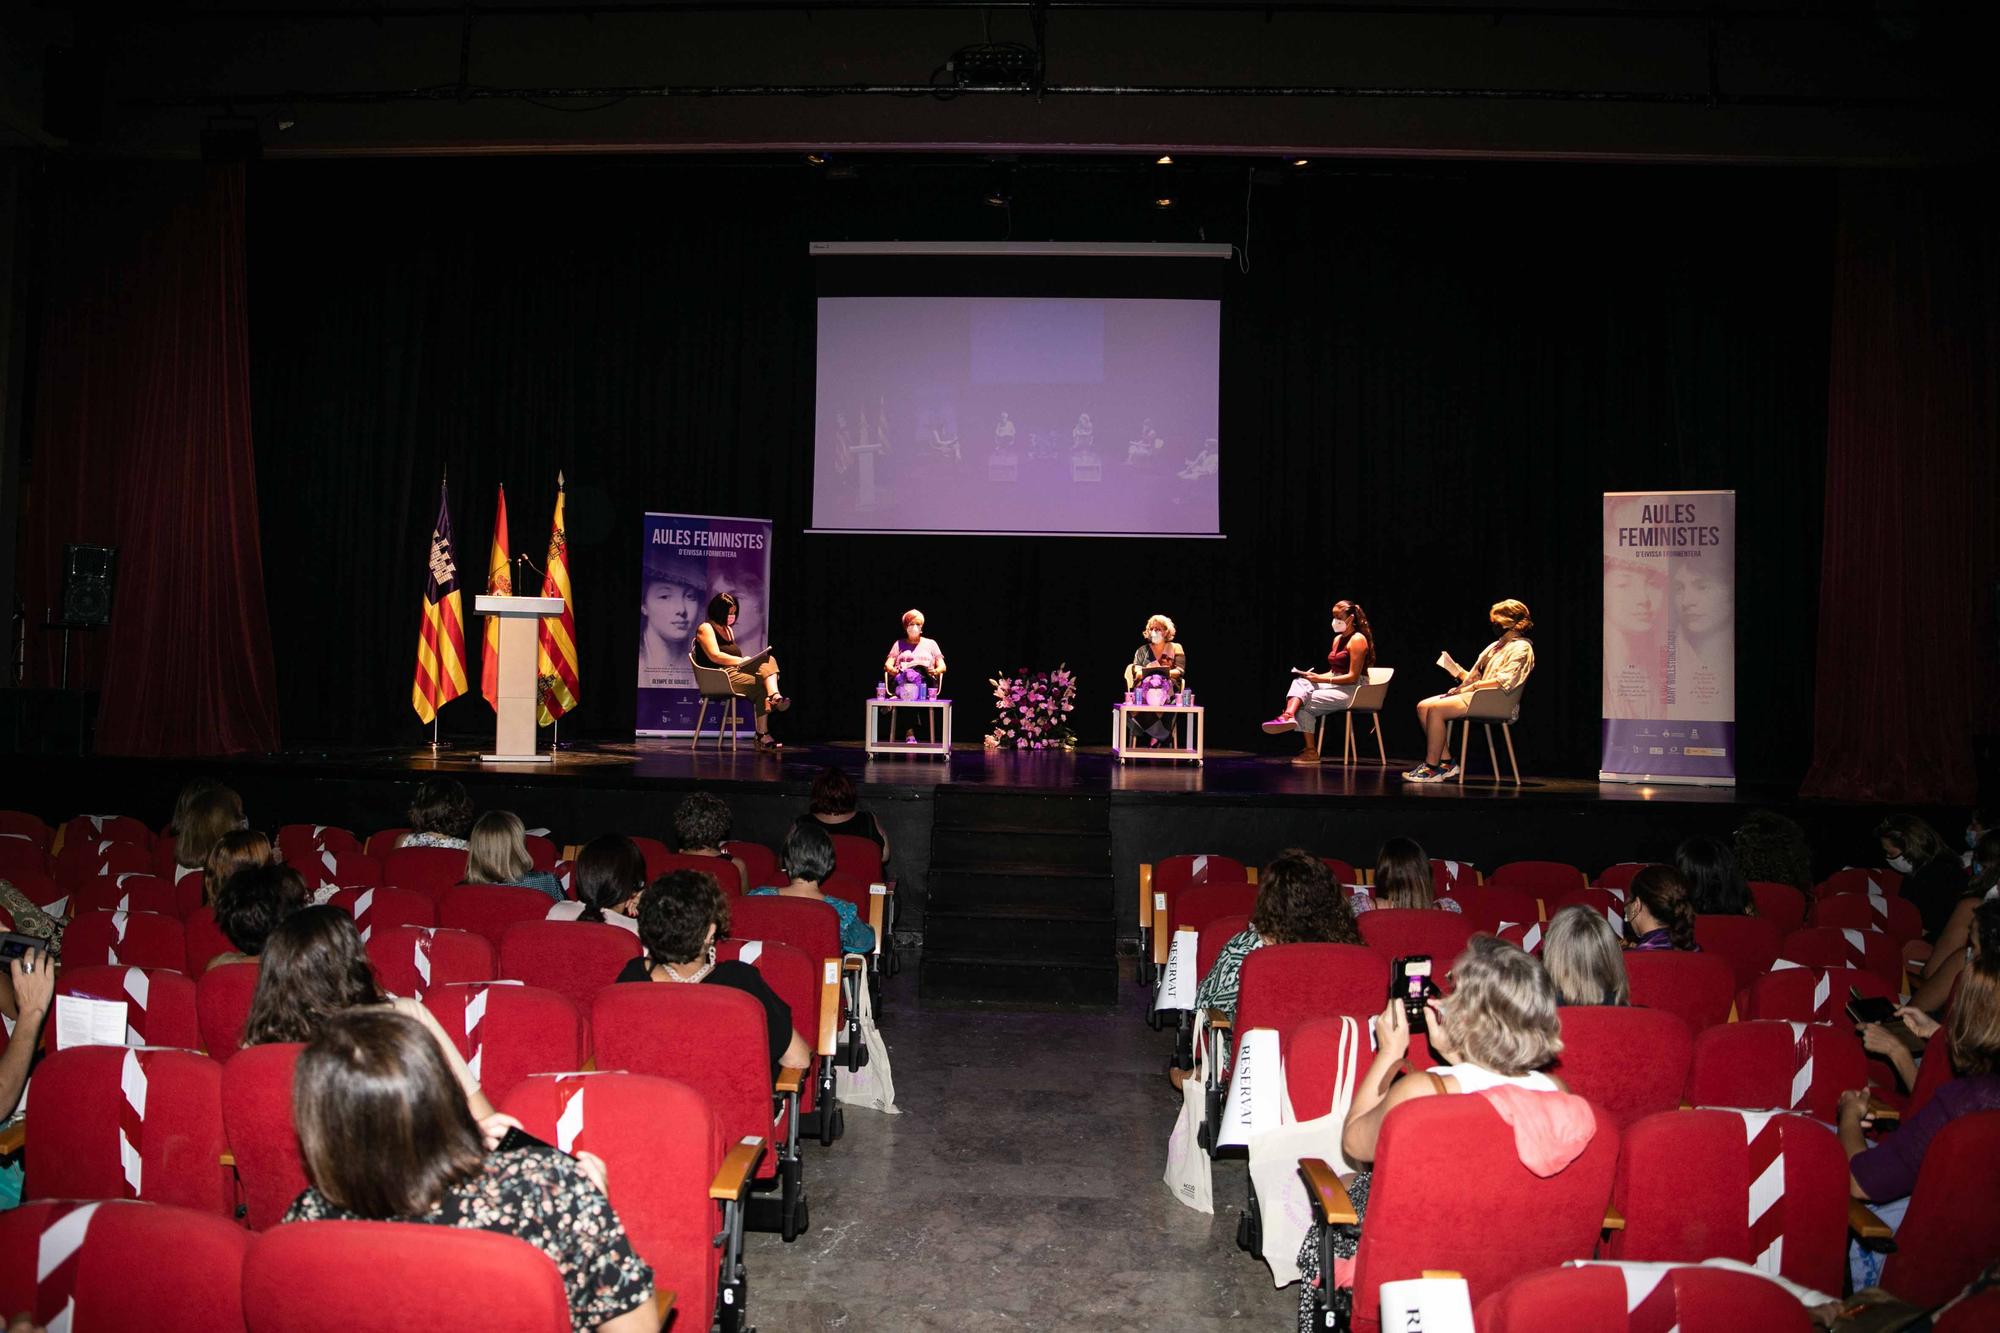 Aulas feministas en Ibiza